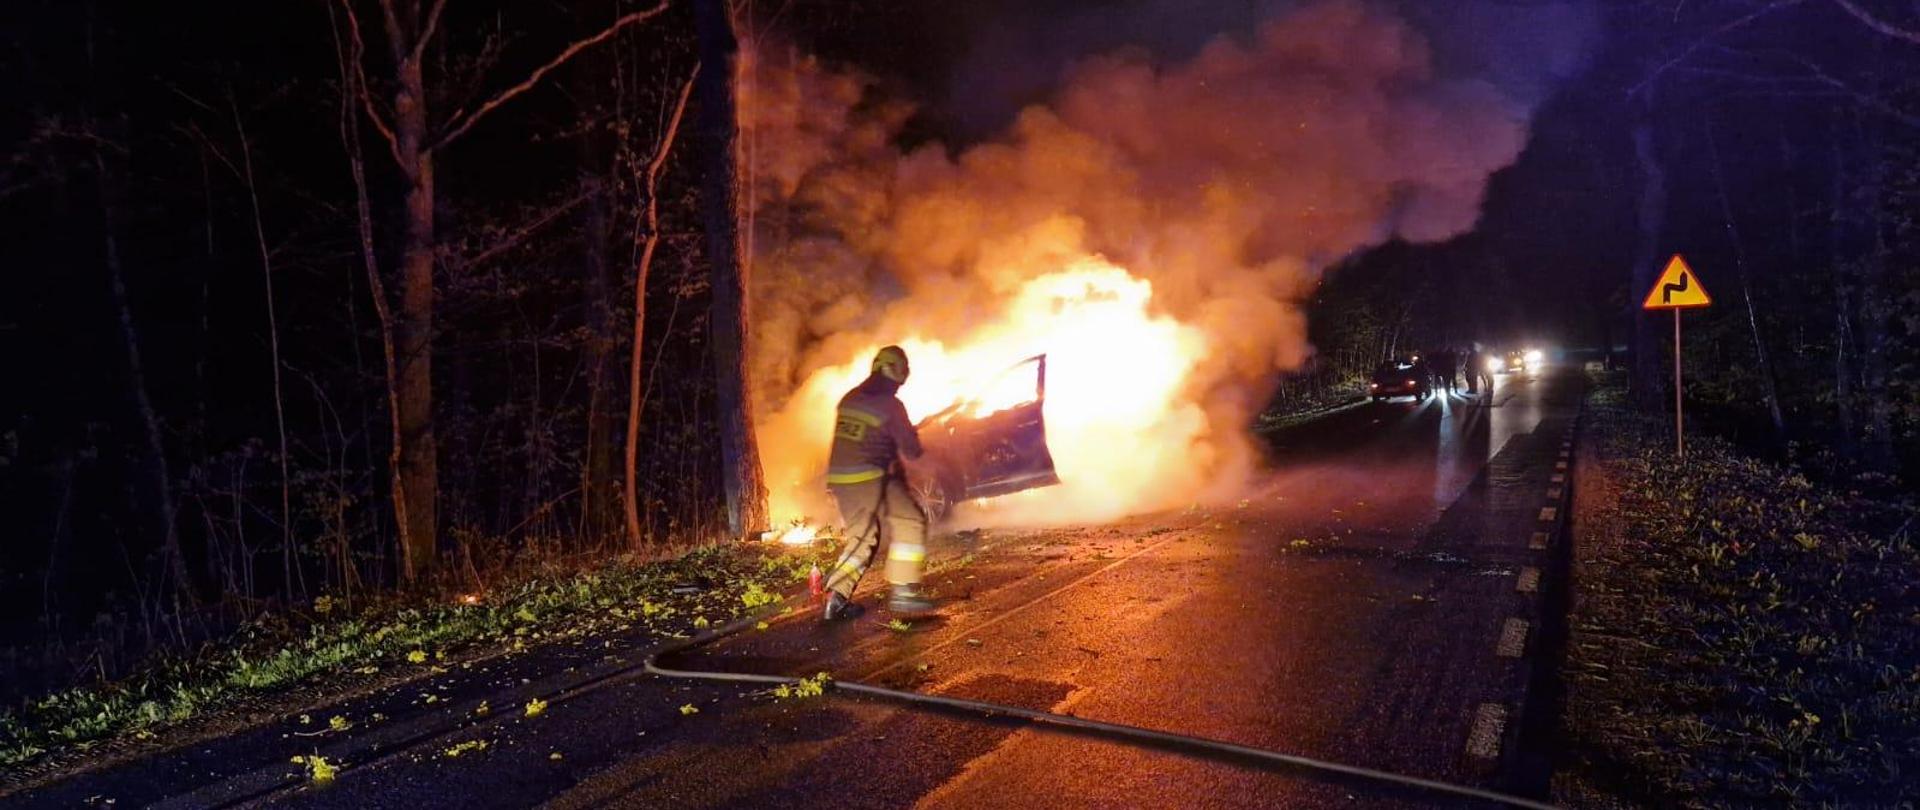 Na poboczu drogi pali się samochód osobowy. Widać kłęby dymu. Strażak za pomocą wody przystępuje do gaszenia pożaru.